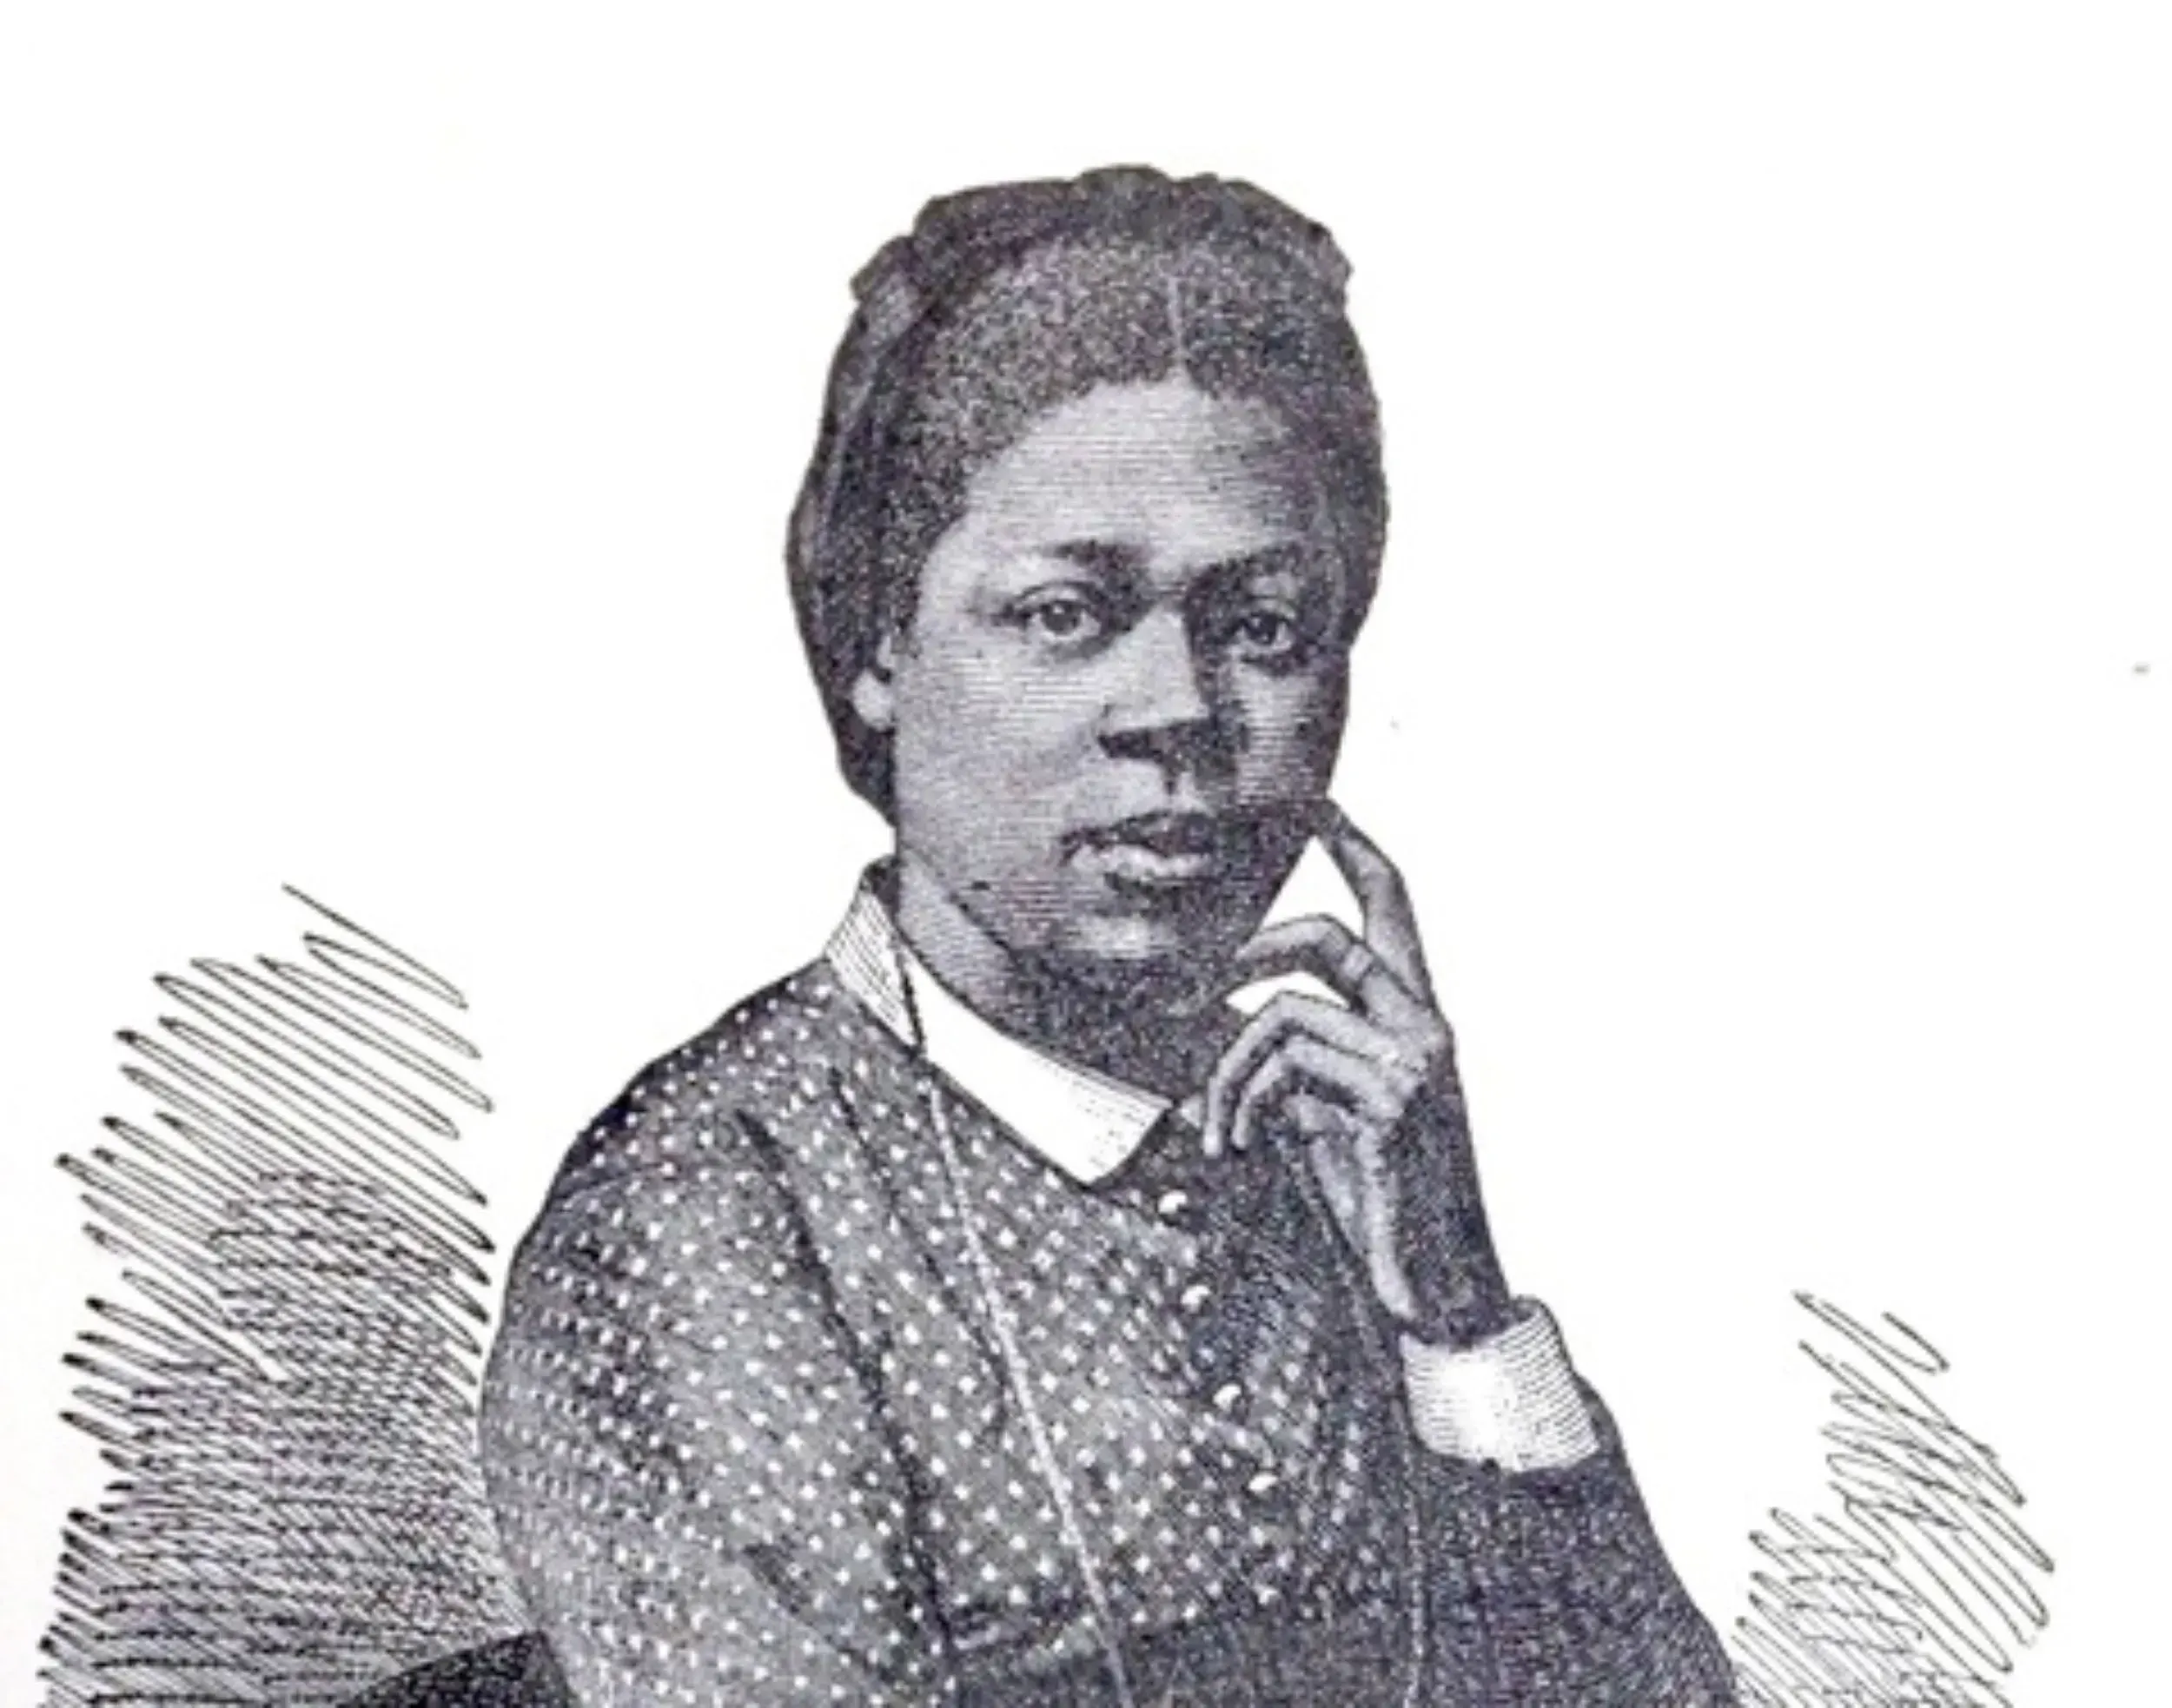 Porträt von Anjama aus Johannes Kobers Biografie von 1884